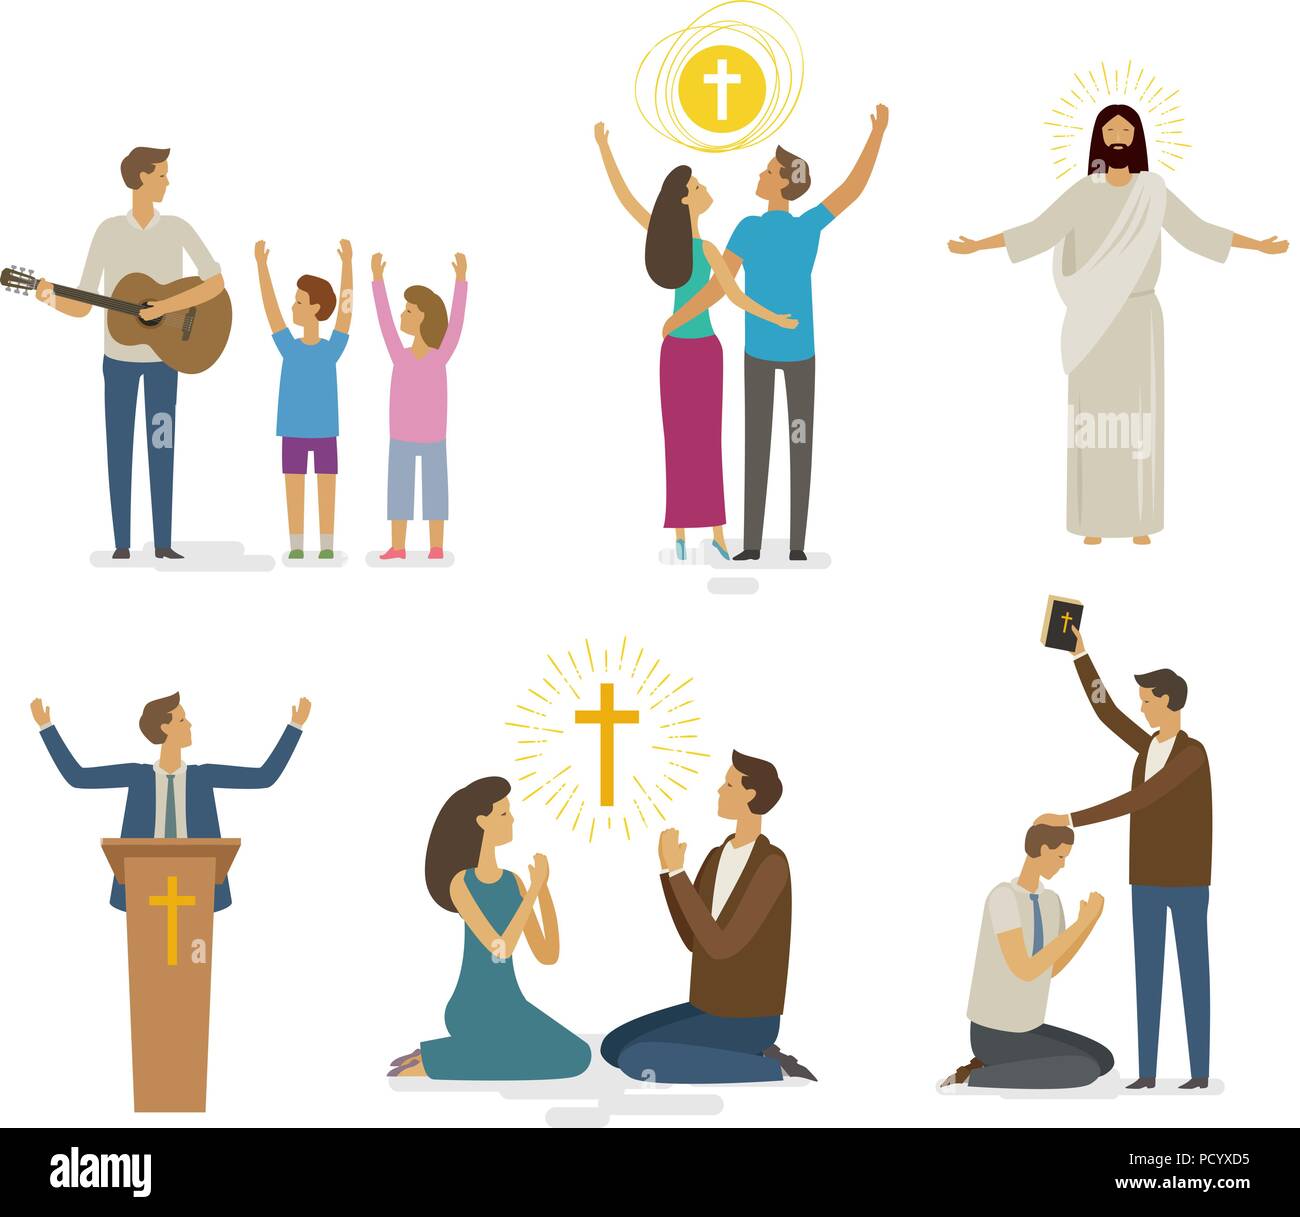 Worship, prayer, faith icon set. Religion concept. Vector illustration Stock Vector